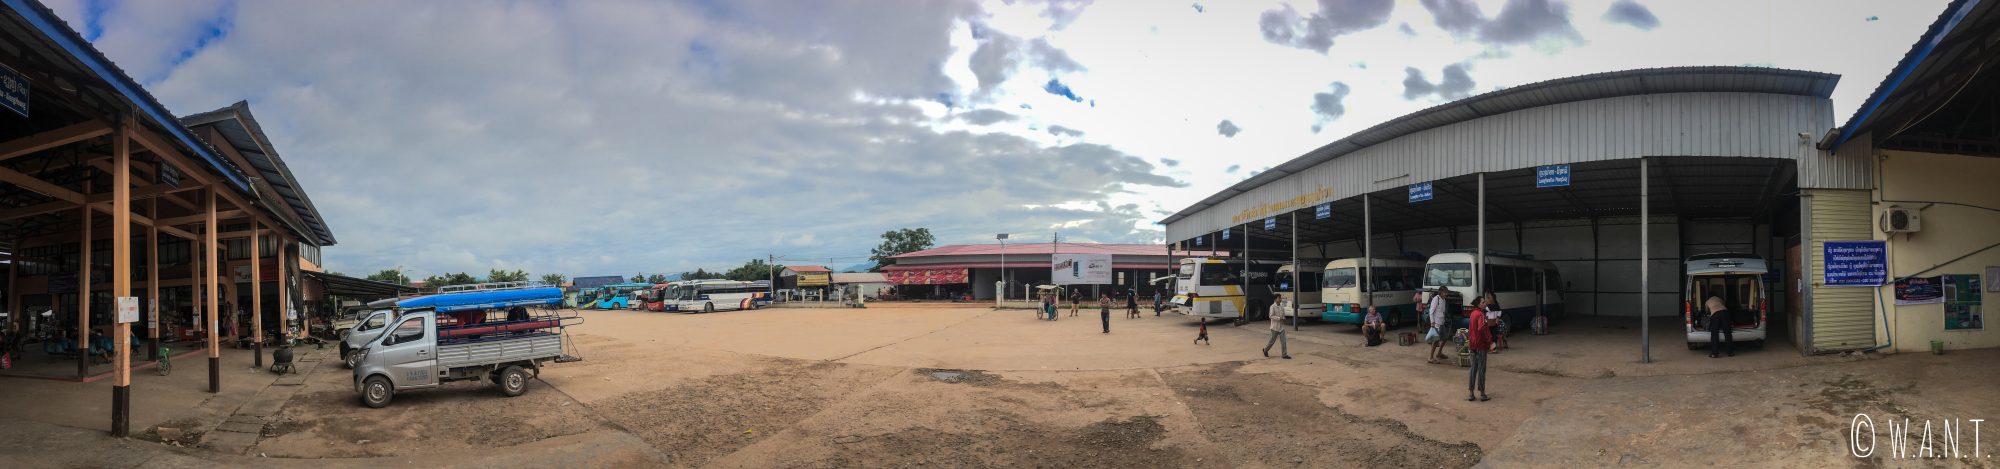 Gare de bus de Luang Namtha